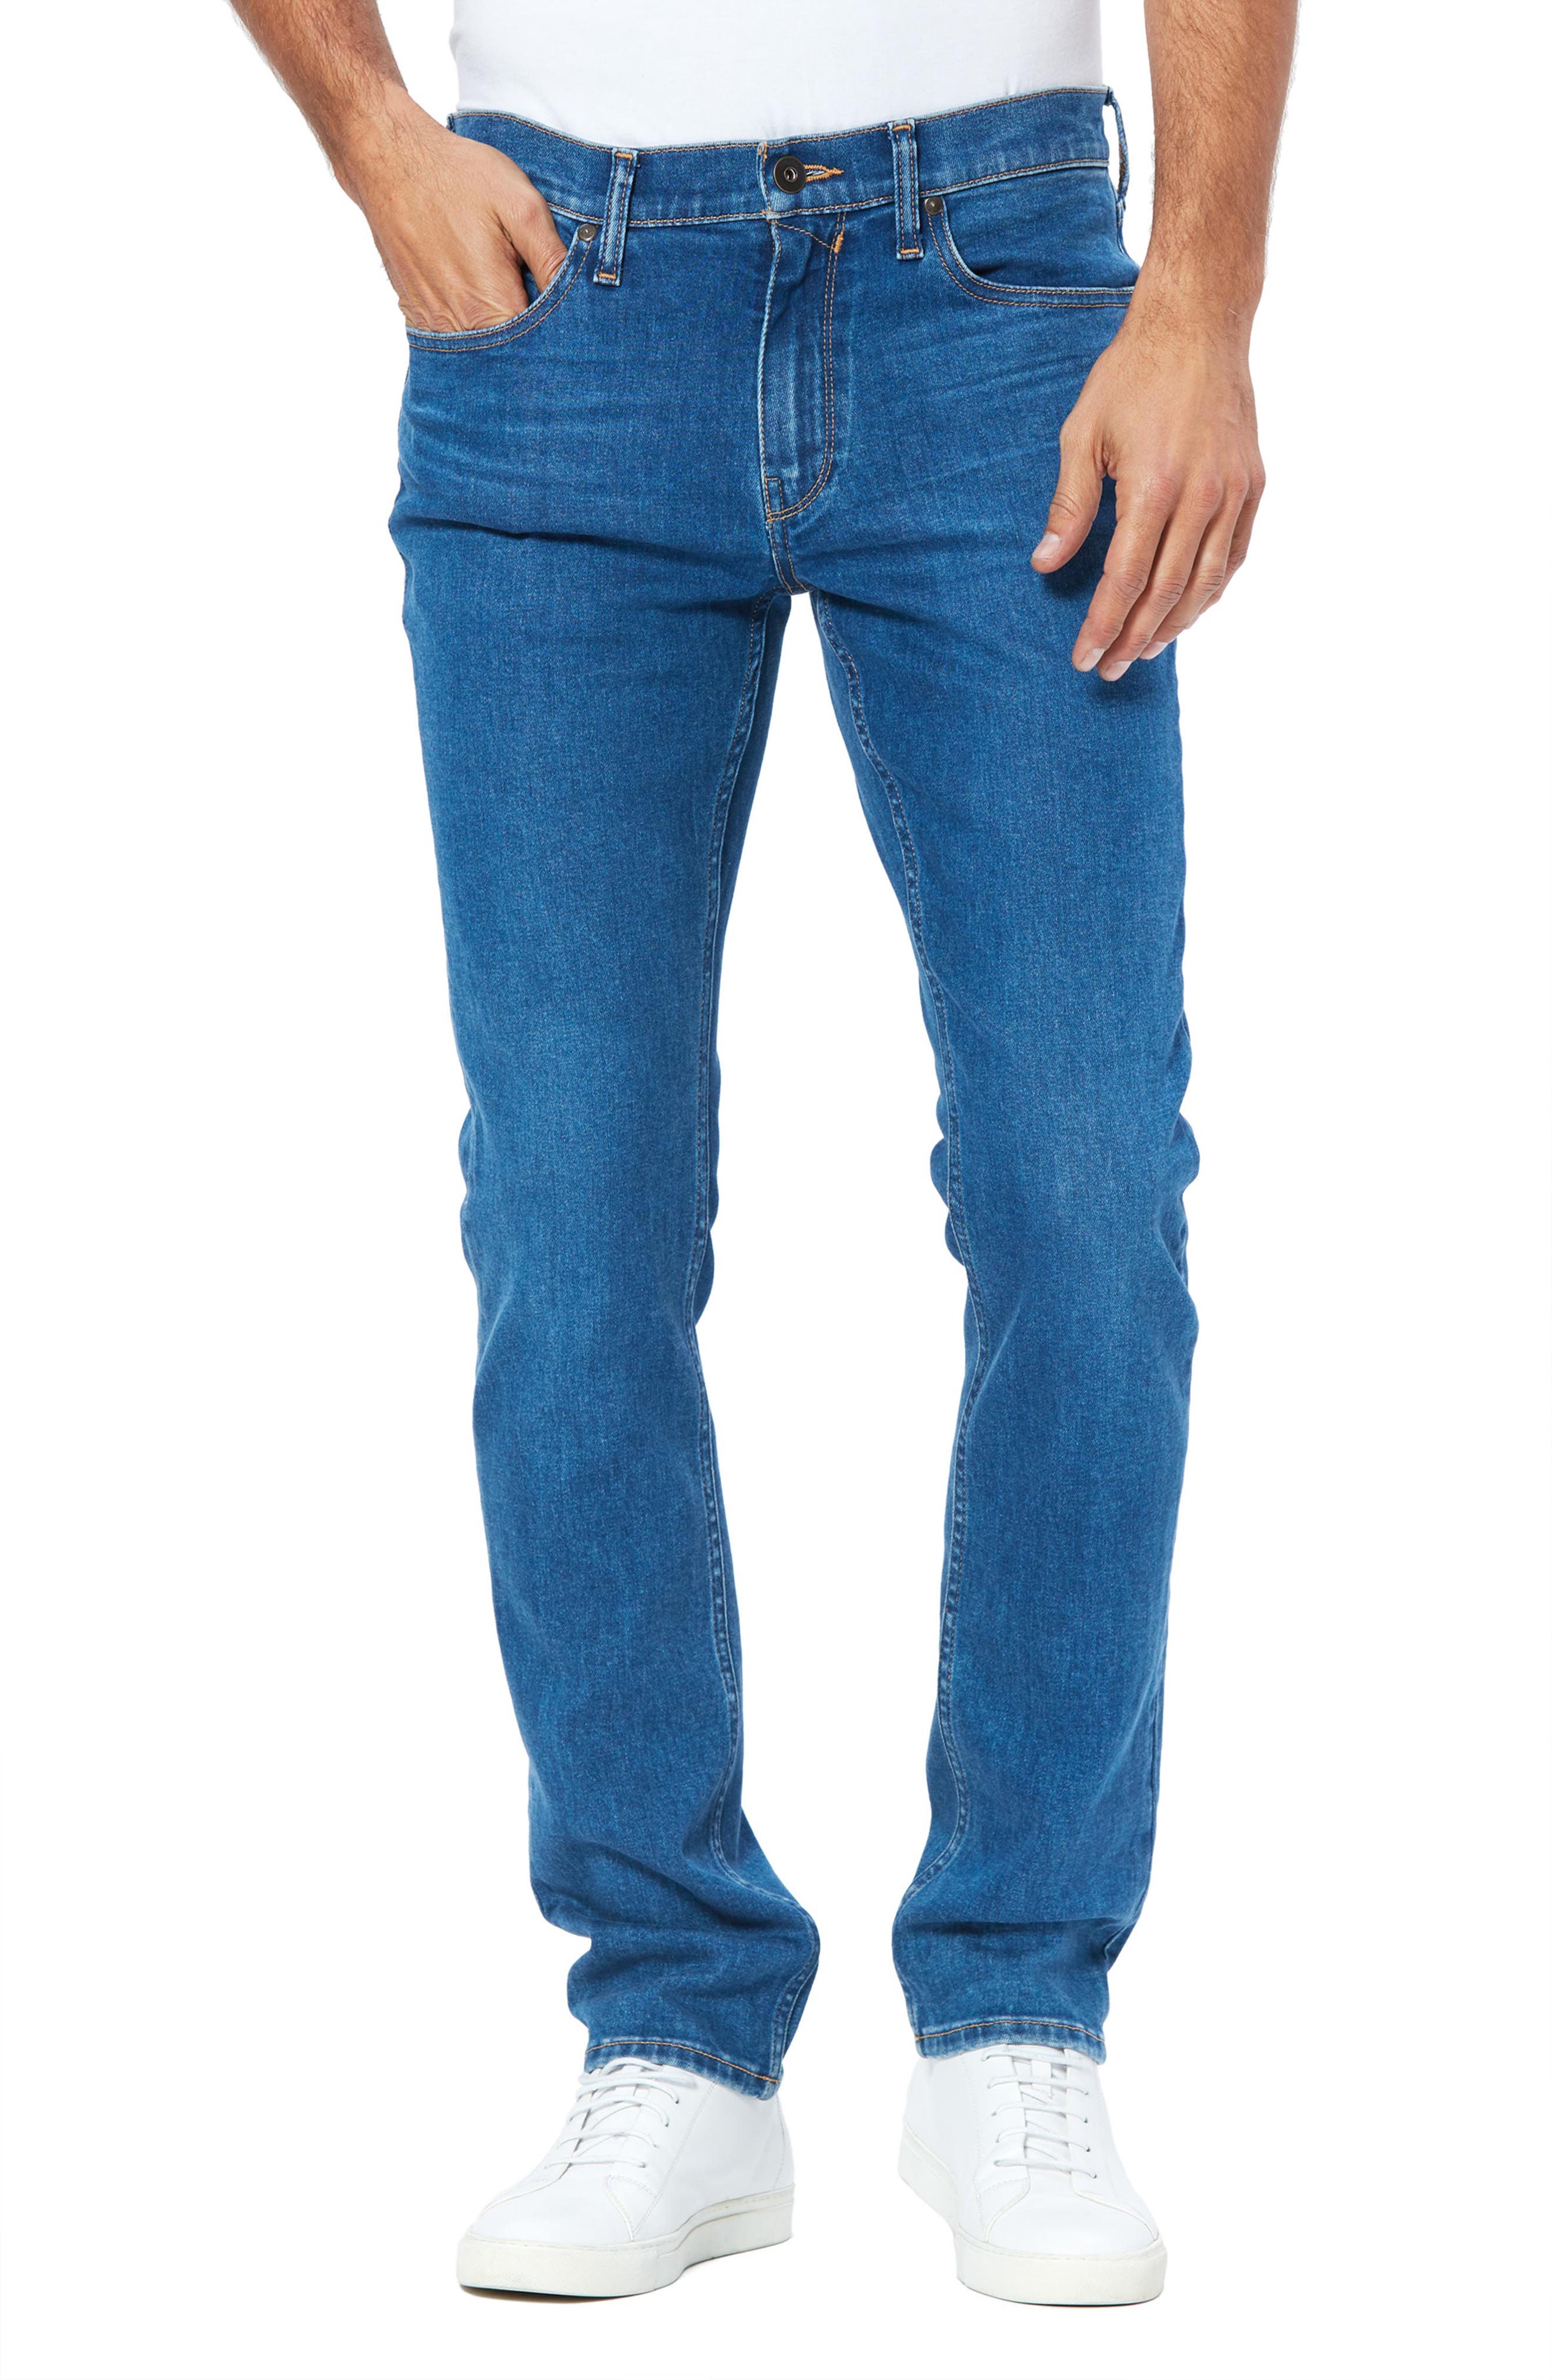 paige men's jeans sale